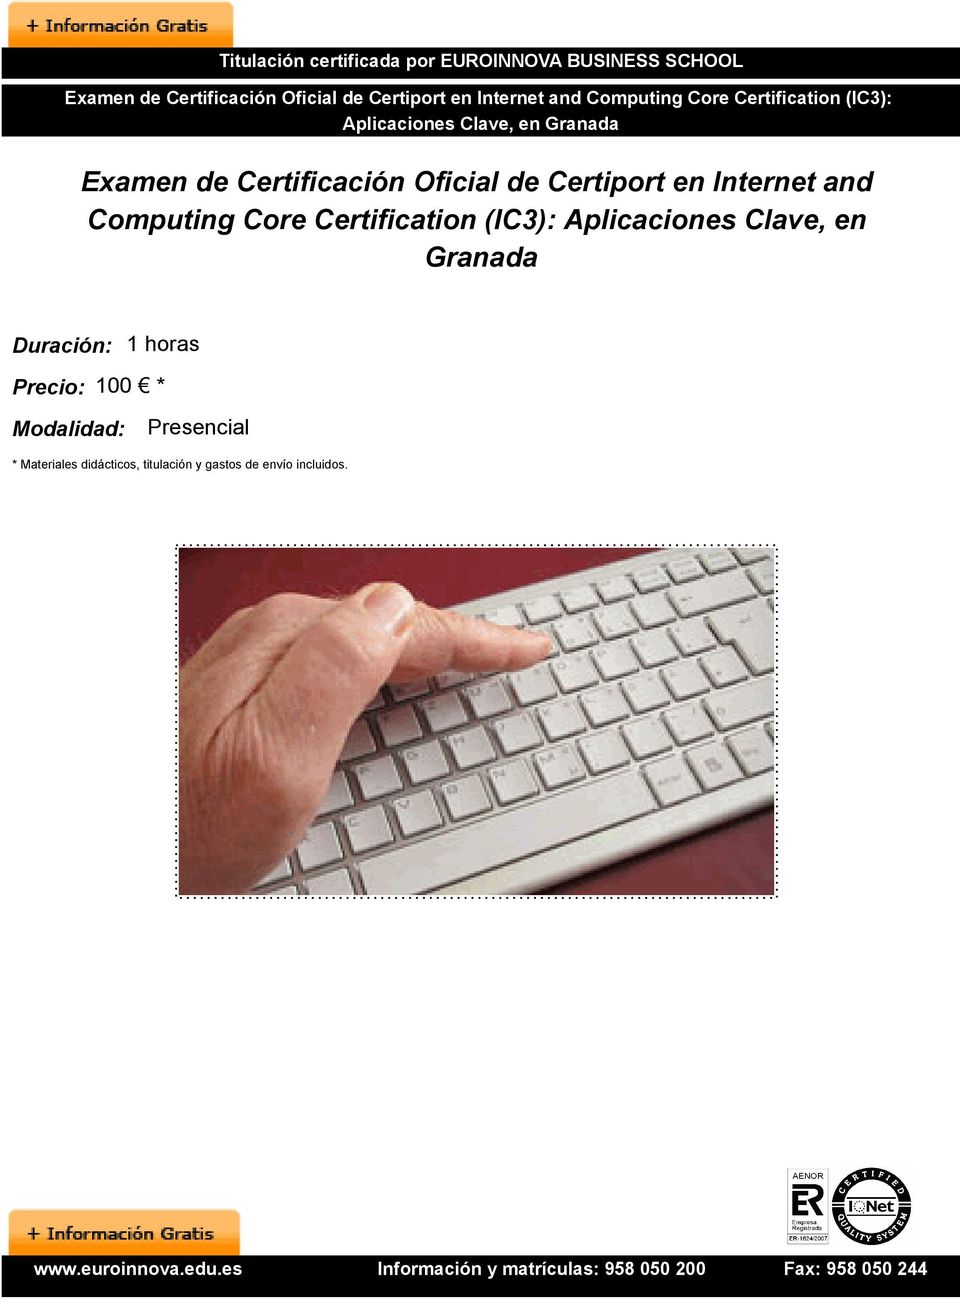 Internet and Computing Core Certification (IC3): Aplicaciones Clave, en Granada Duración: 1 horas